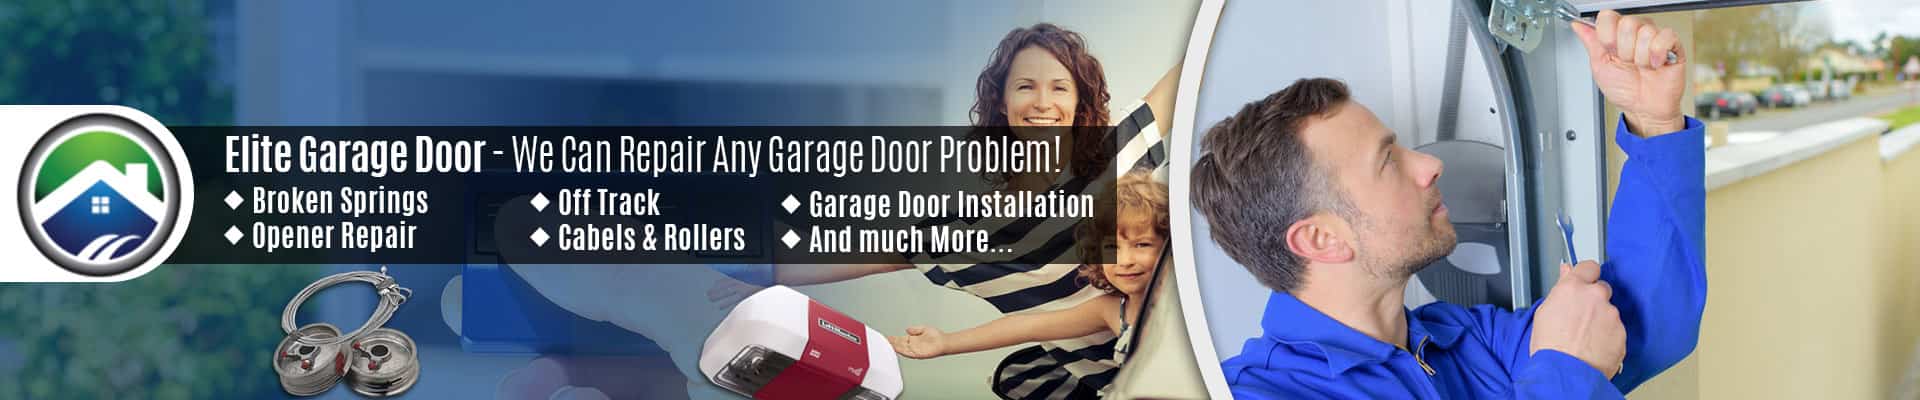 Garage Door Repair Service Arlington – Elite Garage Door of Marysville 